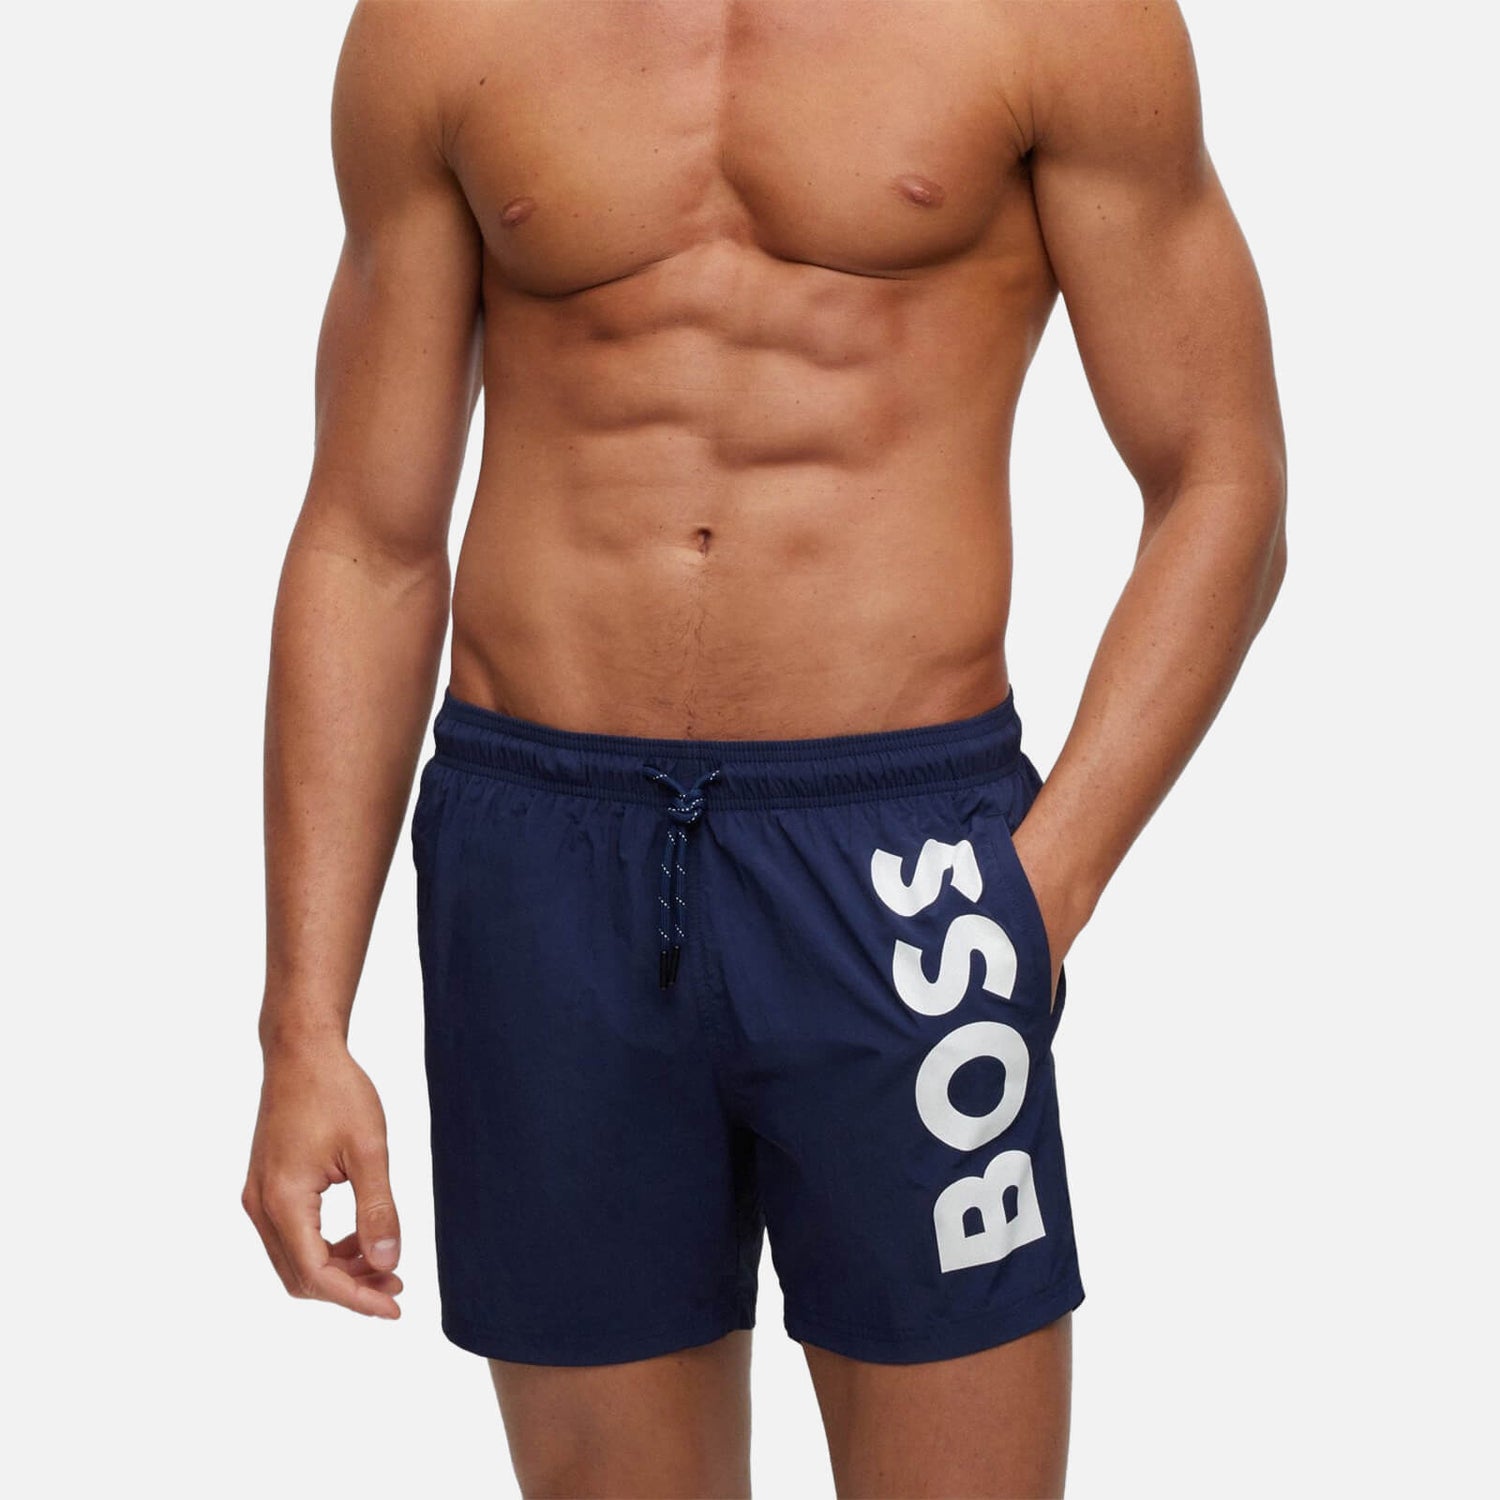 BOSS Bodywear Men's Octopus Swim Shorts - Navy - S